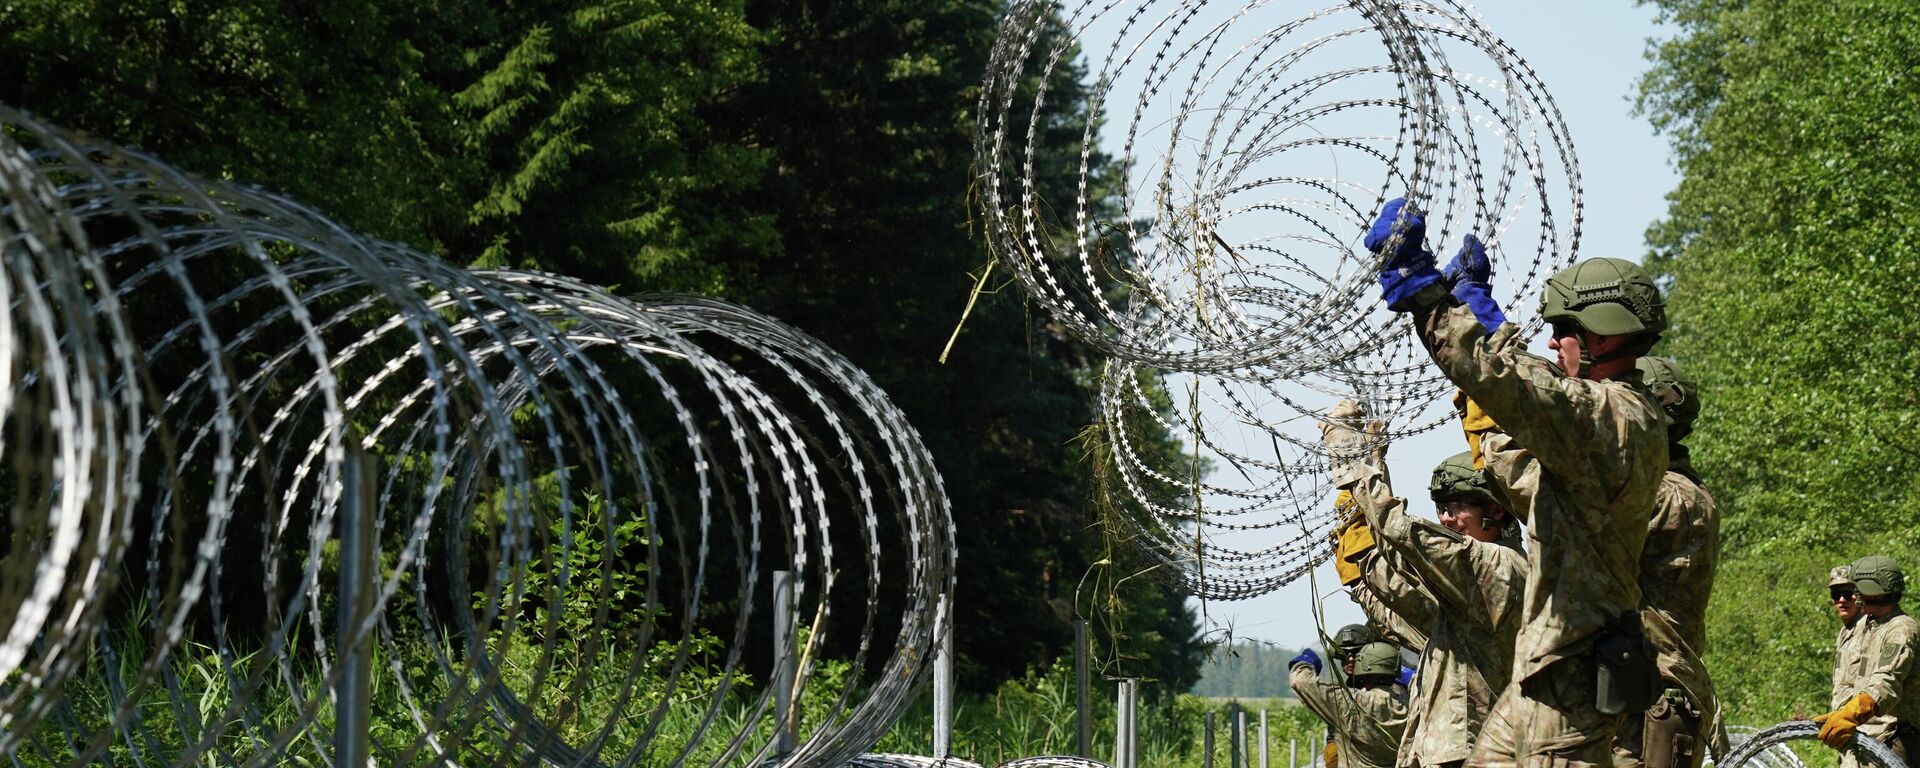 Солдаты литовской армии устанавливают забор из колючей проволоки на границе с Белоруссией в городе Друскининкай - Sputnik Таджикистан, 1920, 14.07.2021